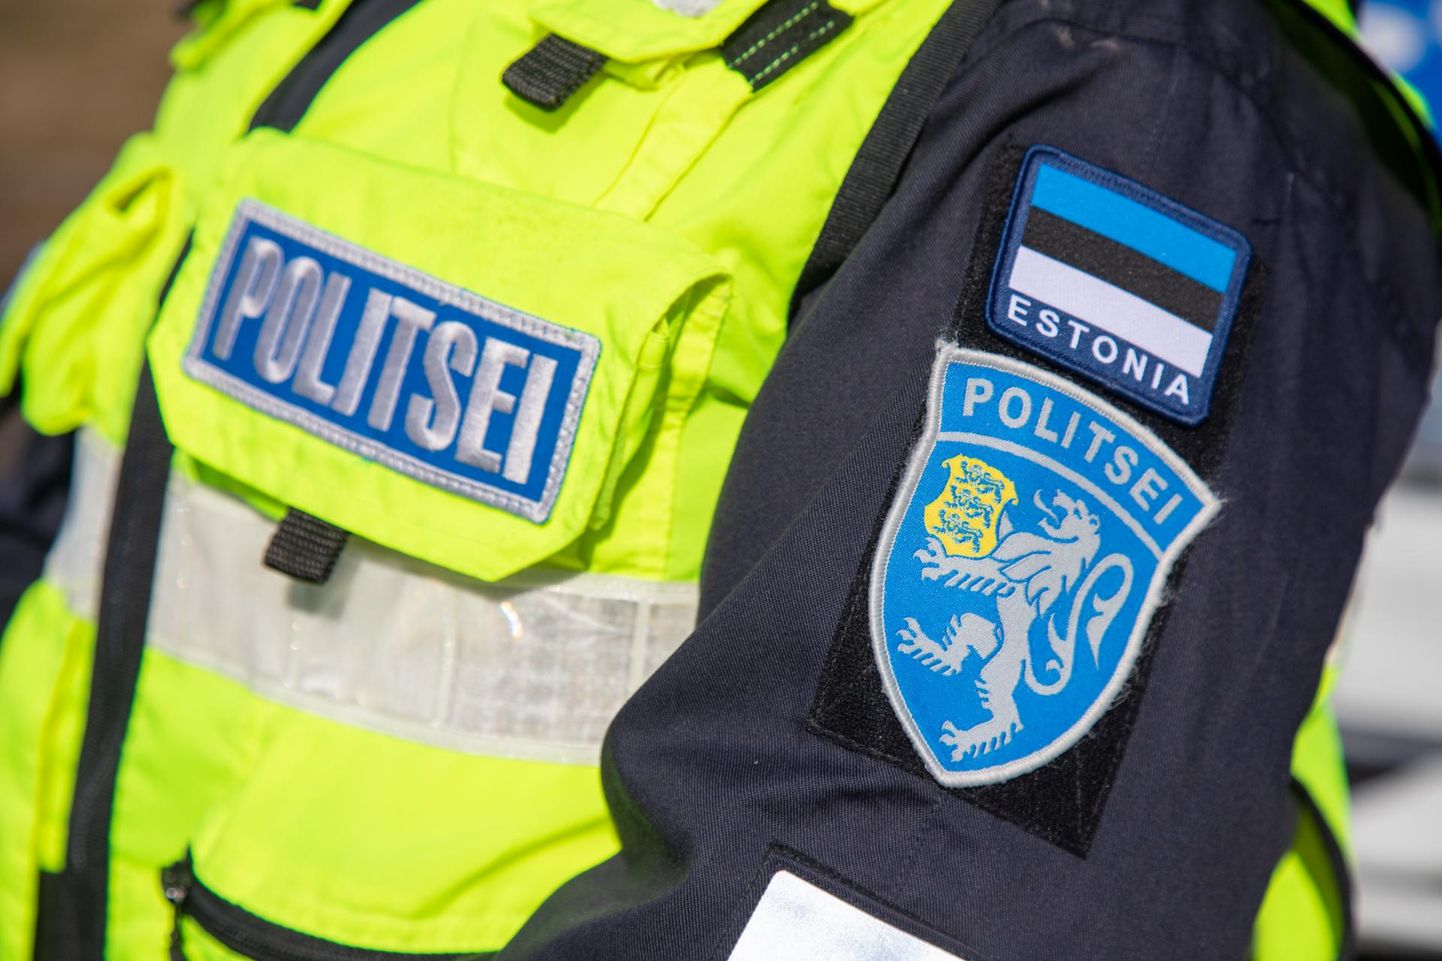 Politsei tabas läinud nädalavahetusel Viljandimaal ühe kriminaalses joobes sõidukijuhi. Sõidukijuhtide kainust kontrolliti 79 korral.